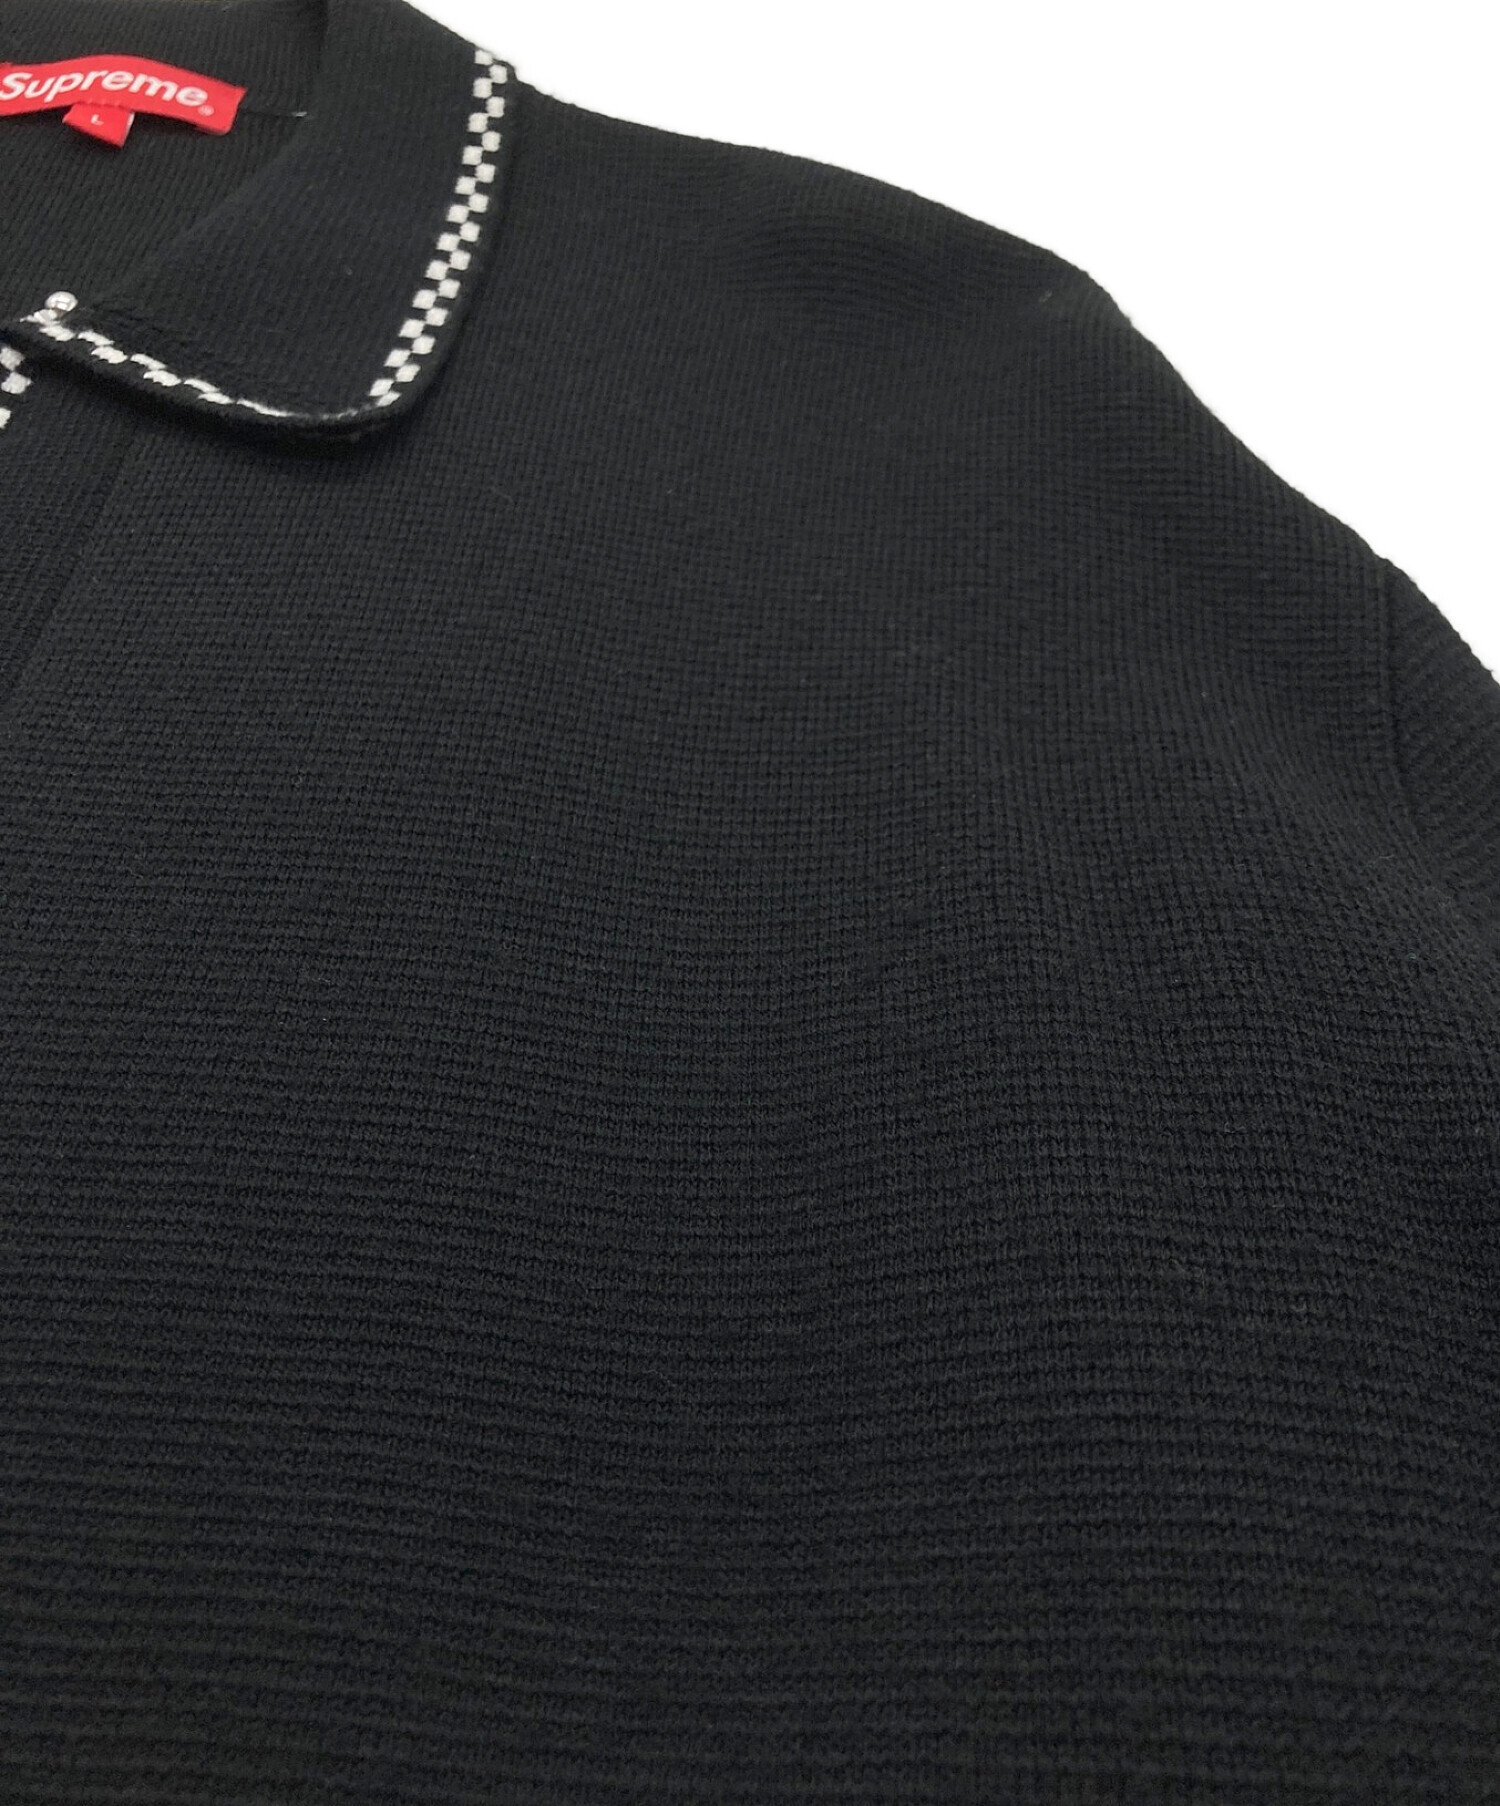 Supreme Checkerboard Zip Up Sweater サイズM - トップス